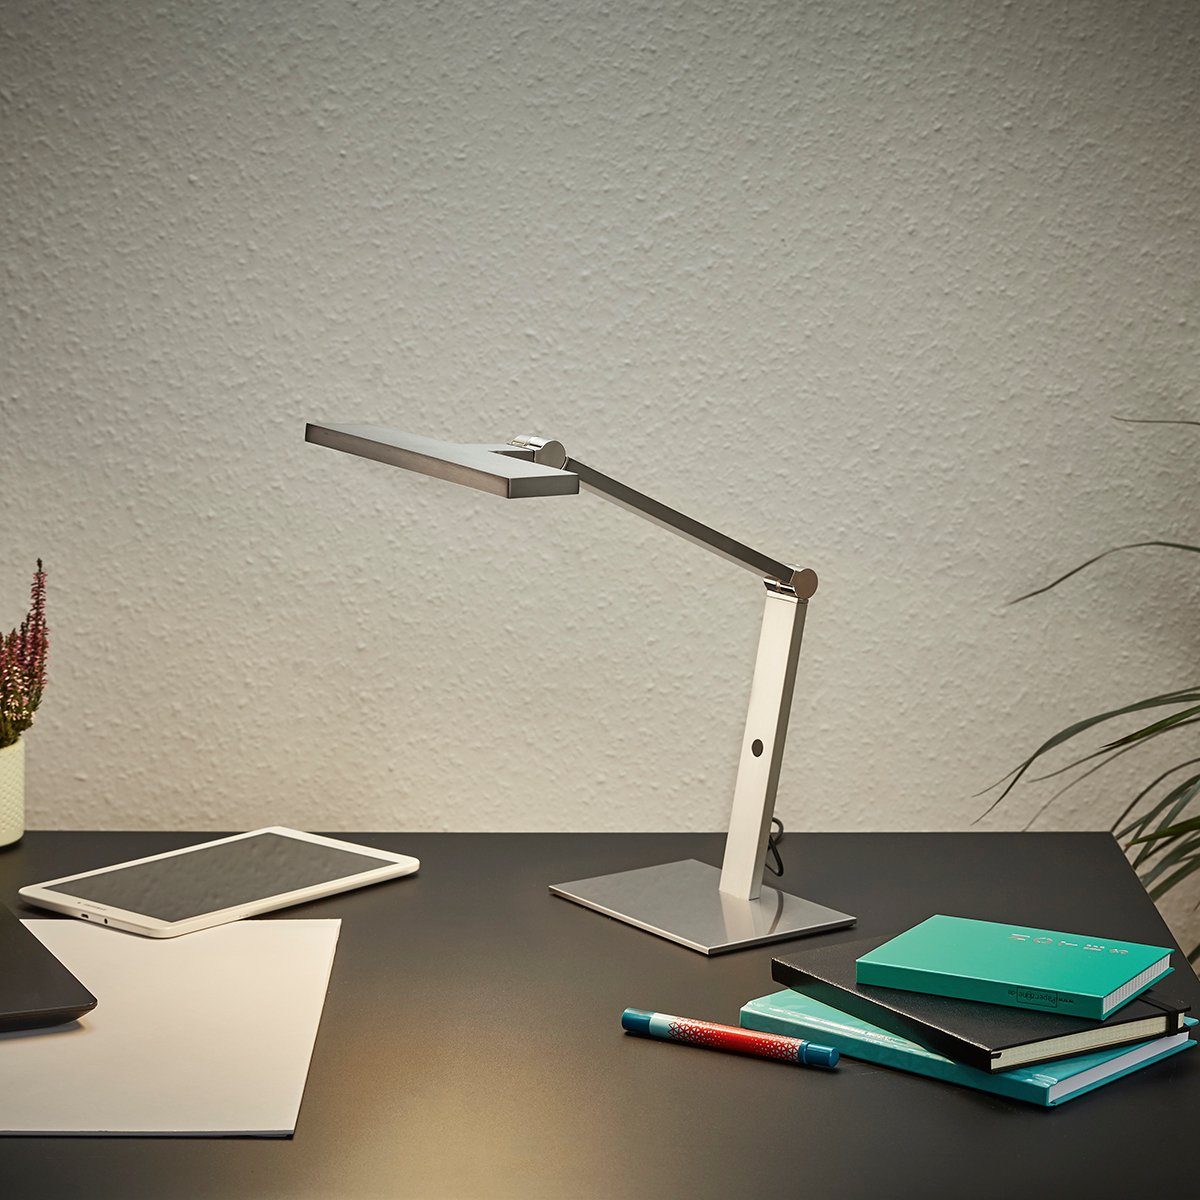 MeLiTec warmweiß T103 Schreibtisch matt, nein, nickel LED Tischleuchte Leuchte